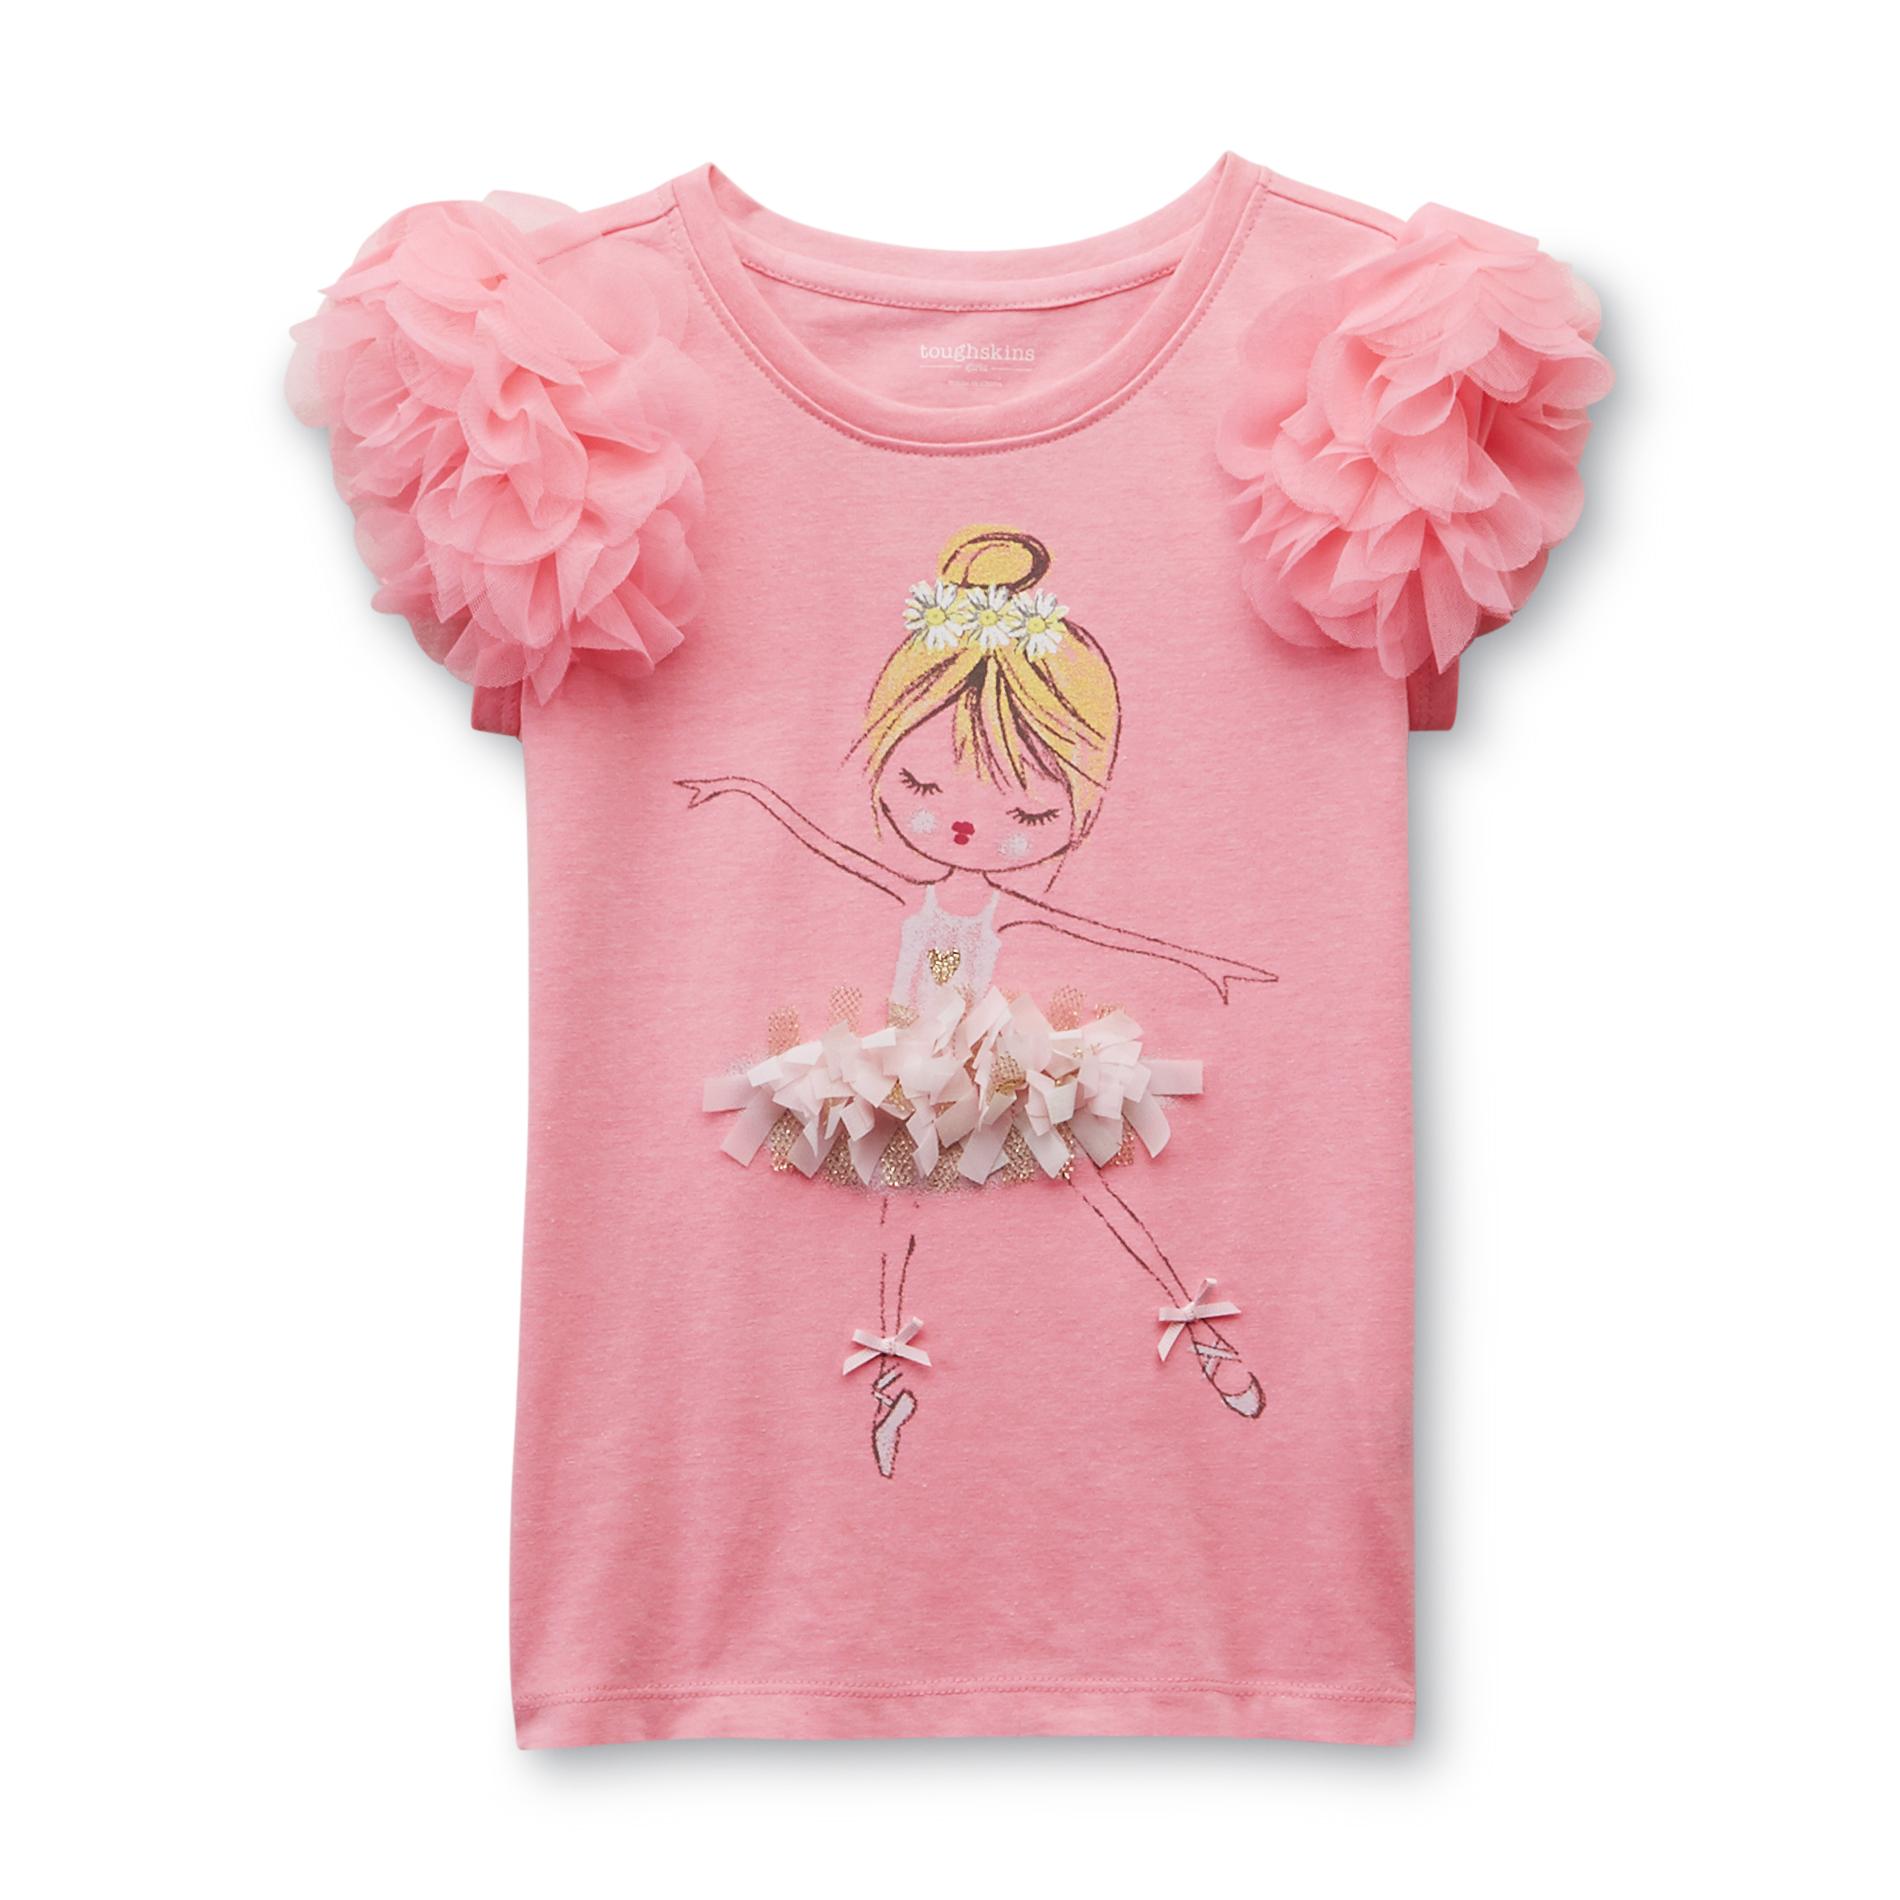 Toughskins Infant & Toddler Girl's Embellished Top - Ballerina